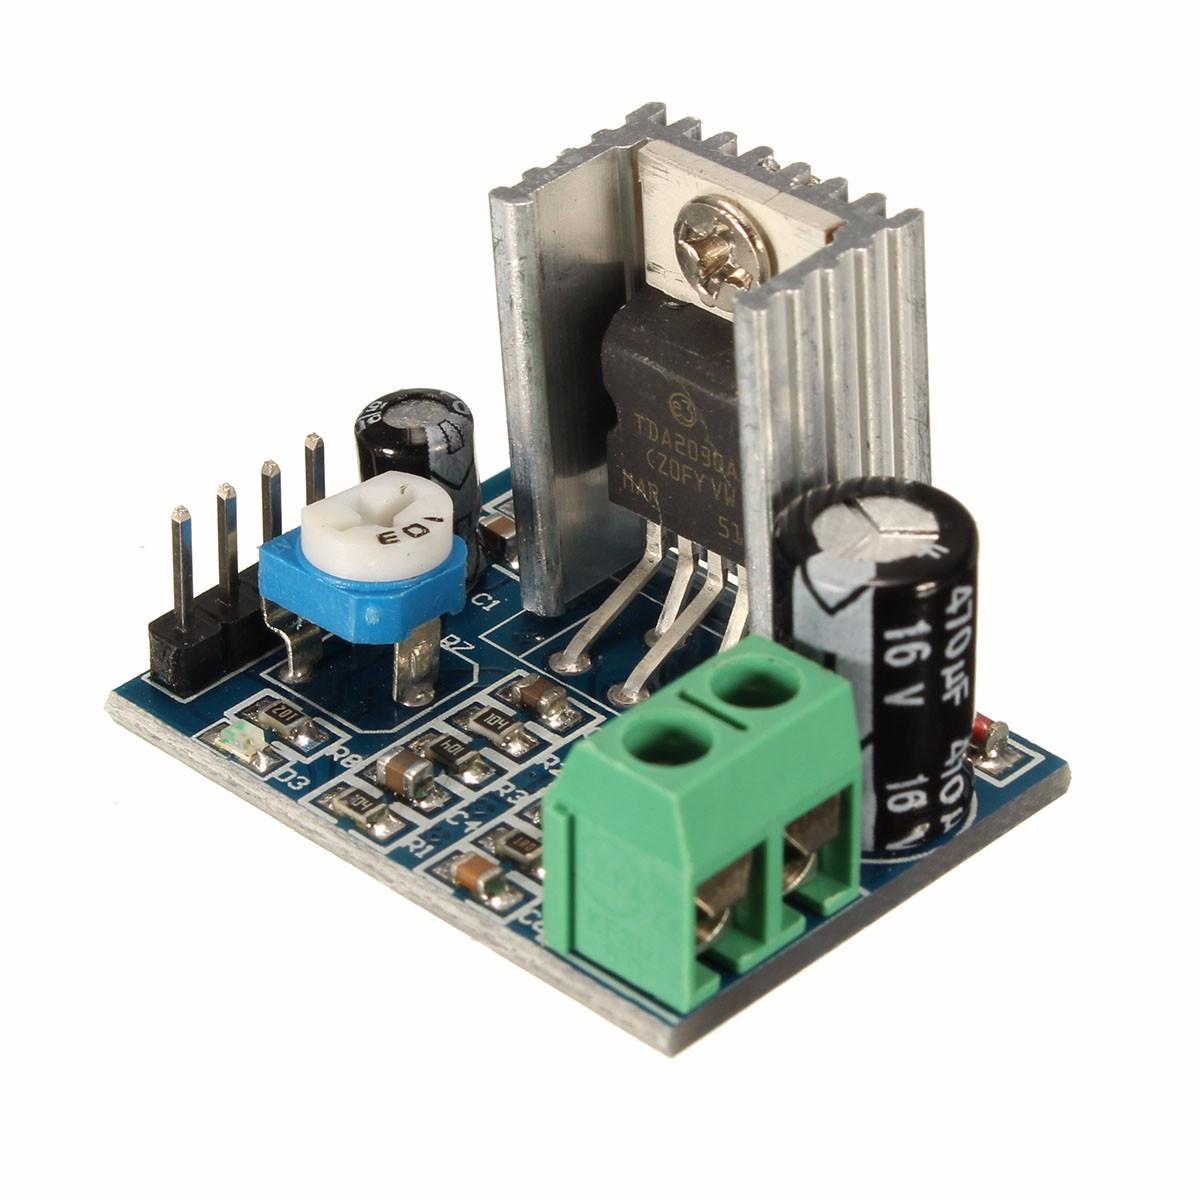 

3Pcs TDA2030A 6-12V AC / DC модуль платы усилителя звука с одним источником питания